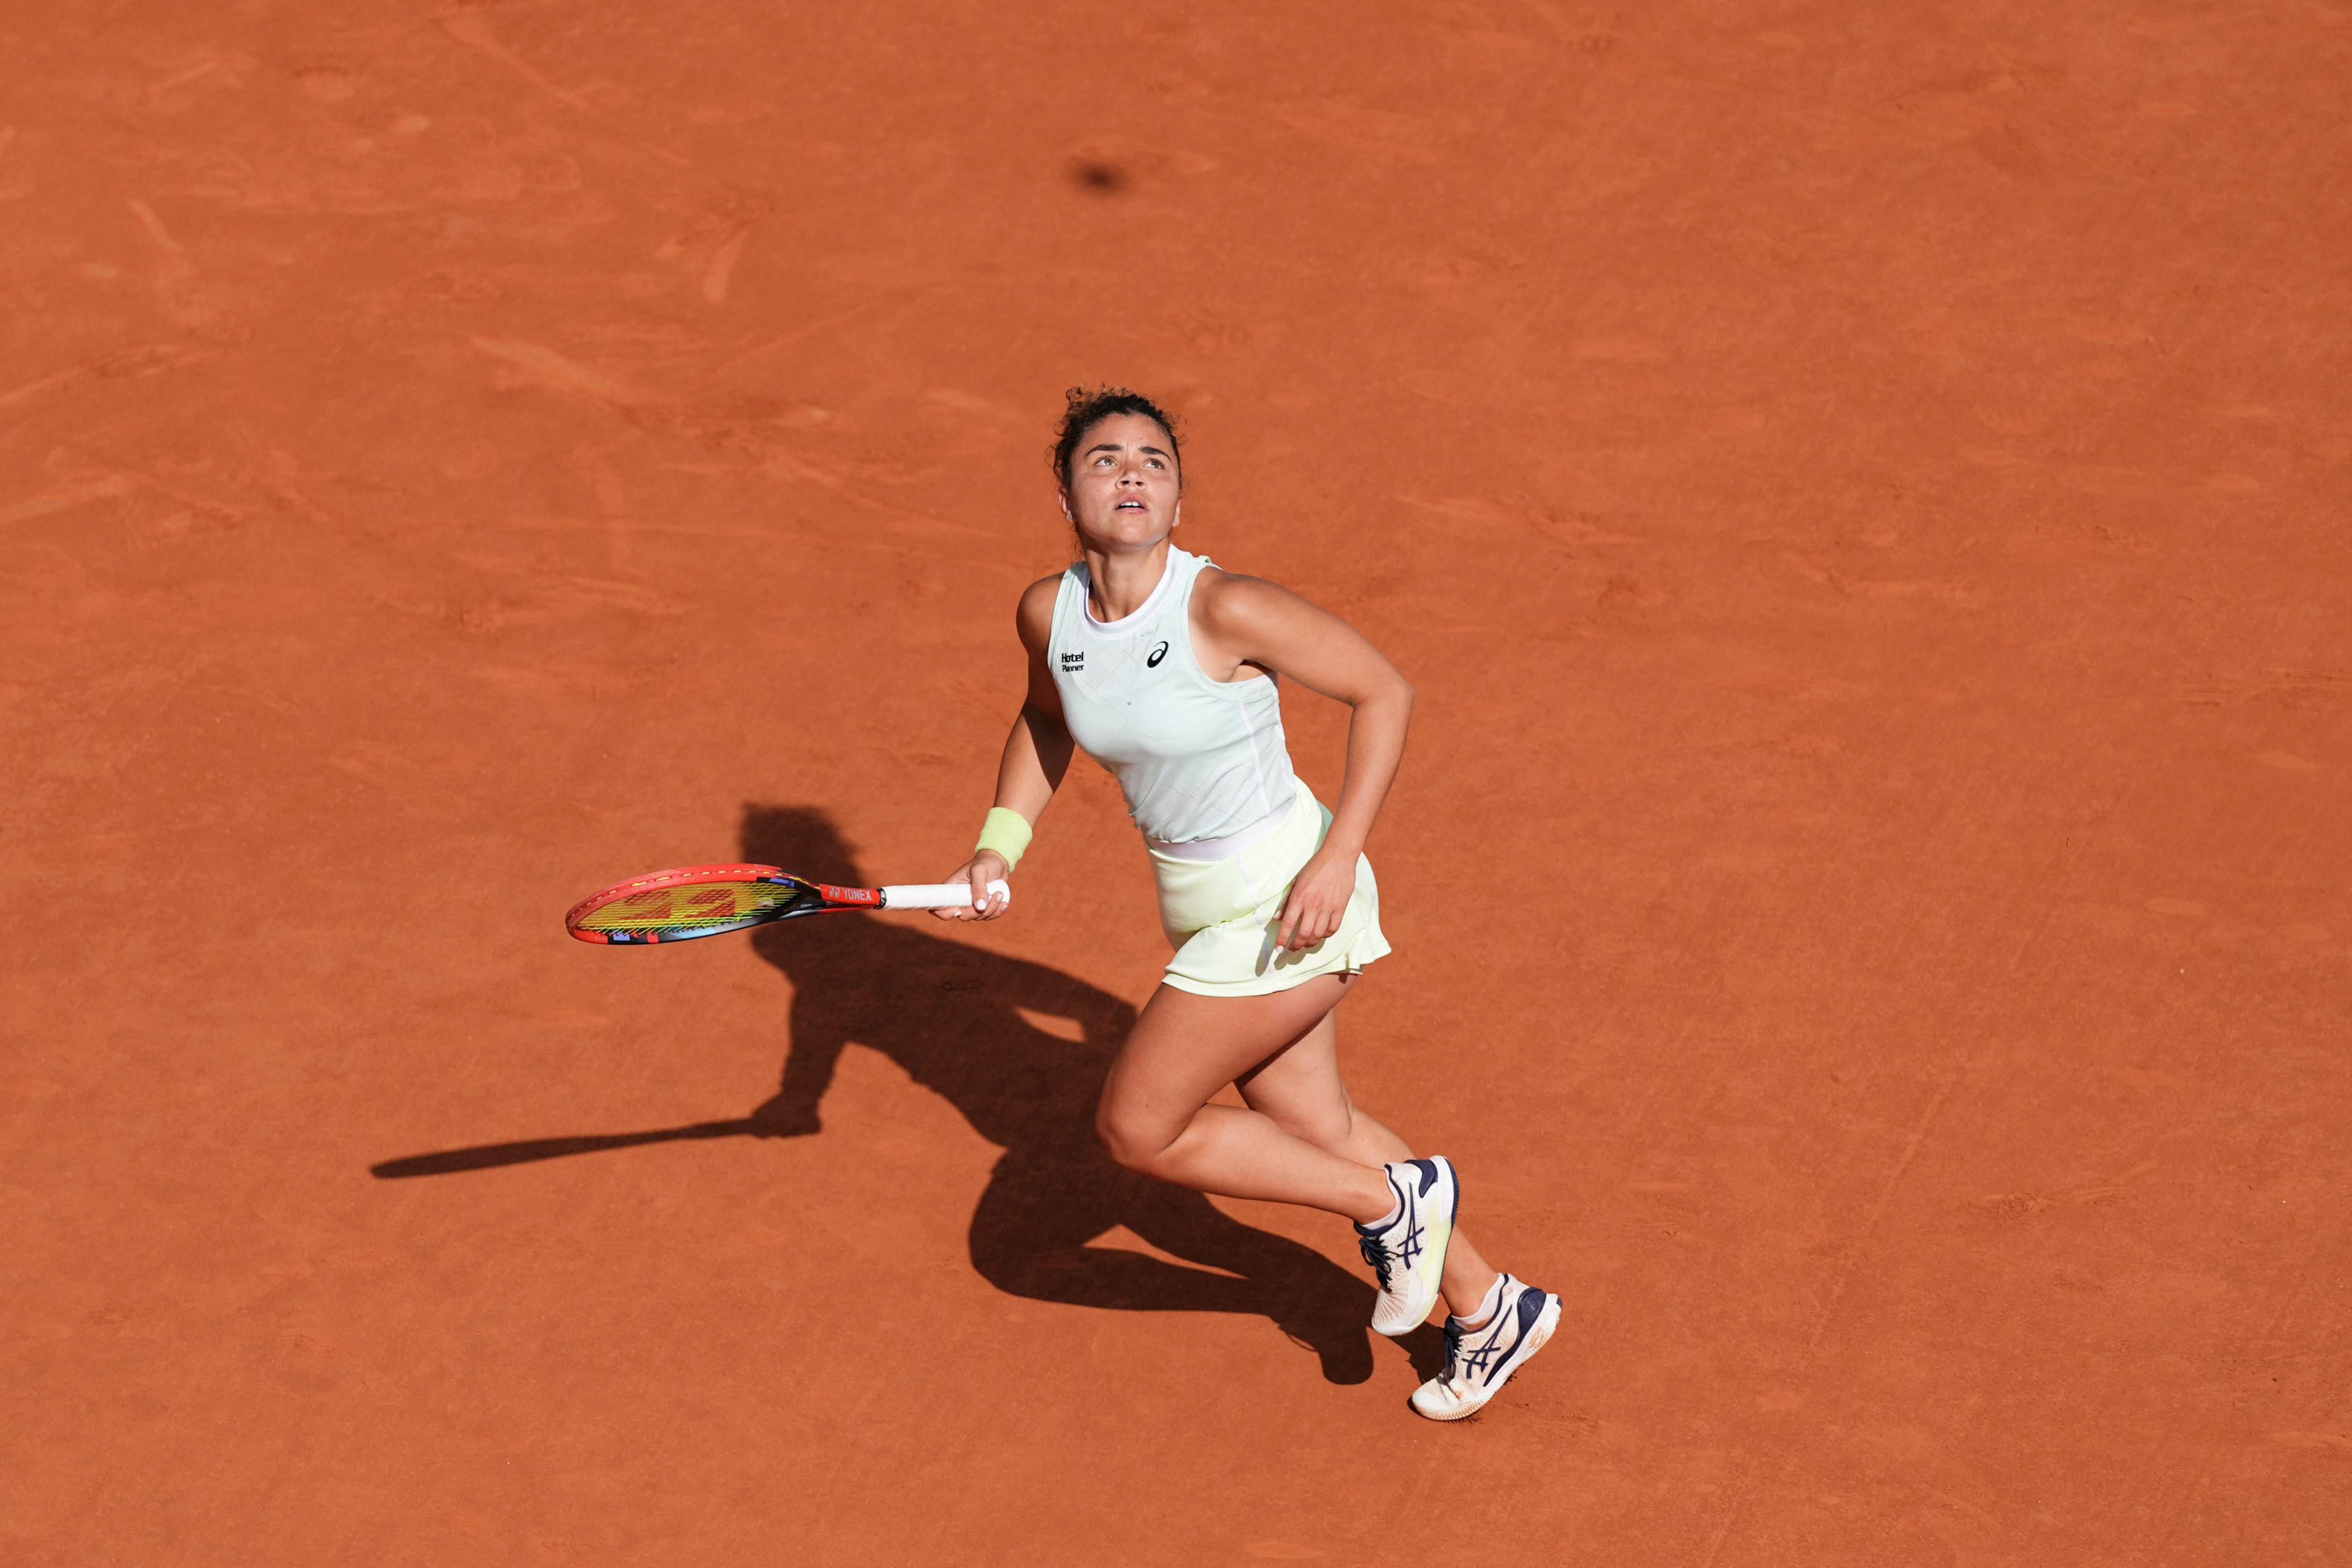 Impresa Paolini al Roland Garros - domina Andreeva e vola in finale contro Swiatek